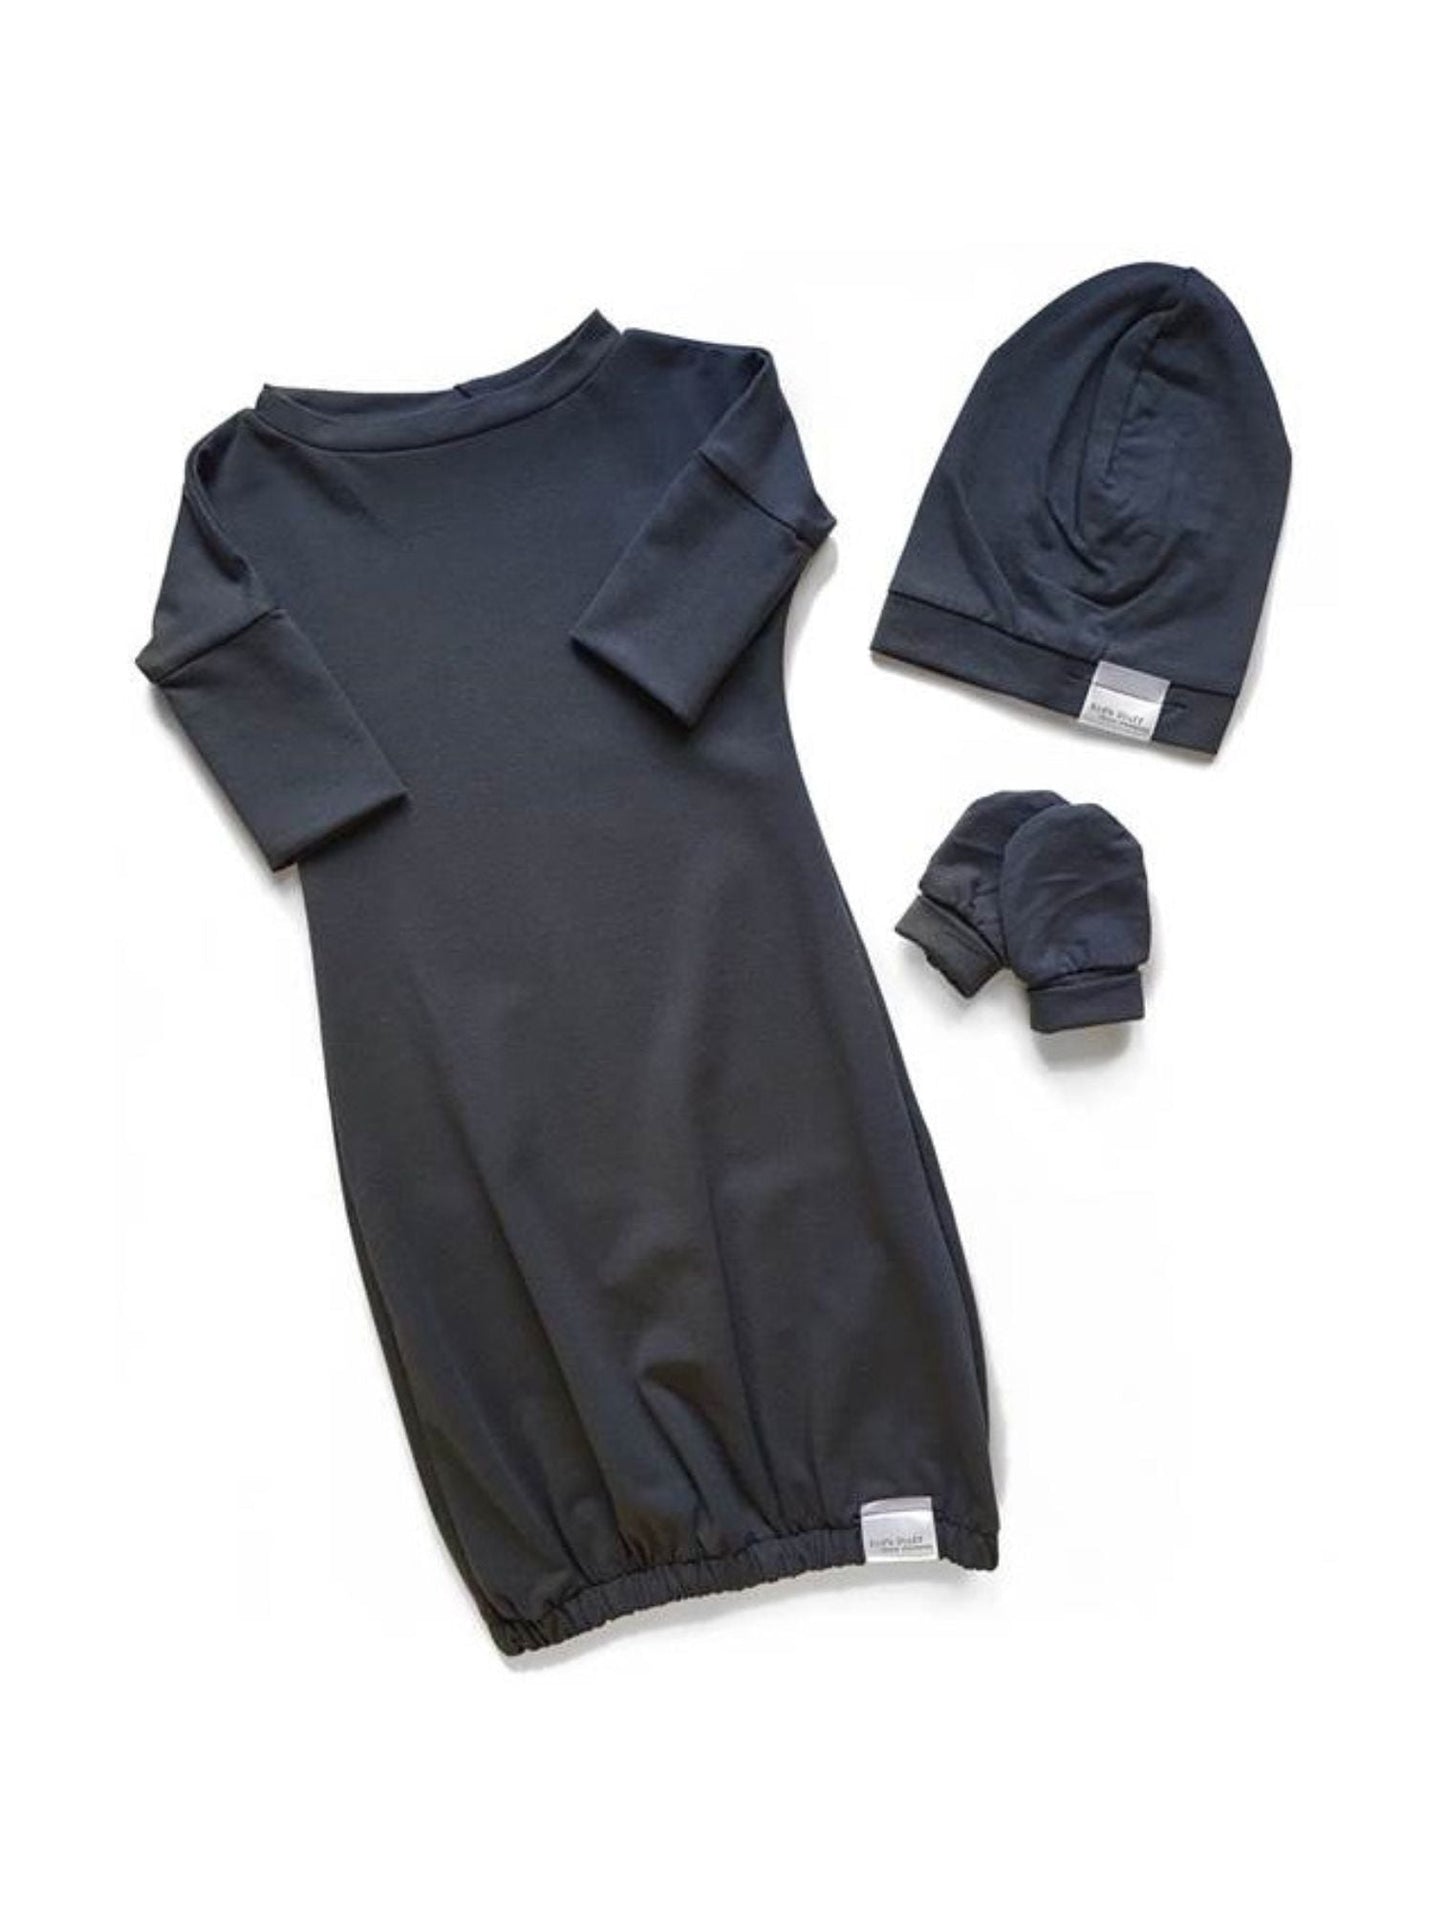 Newborn Set Gown | Dark Grey